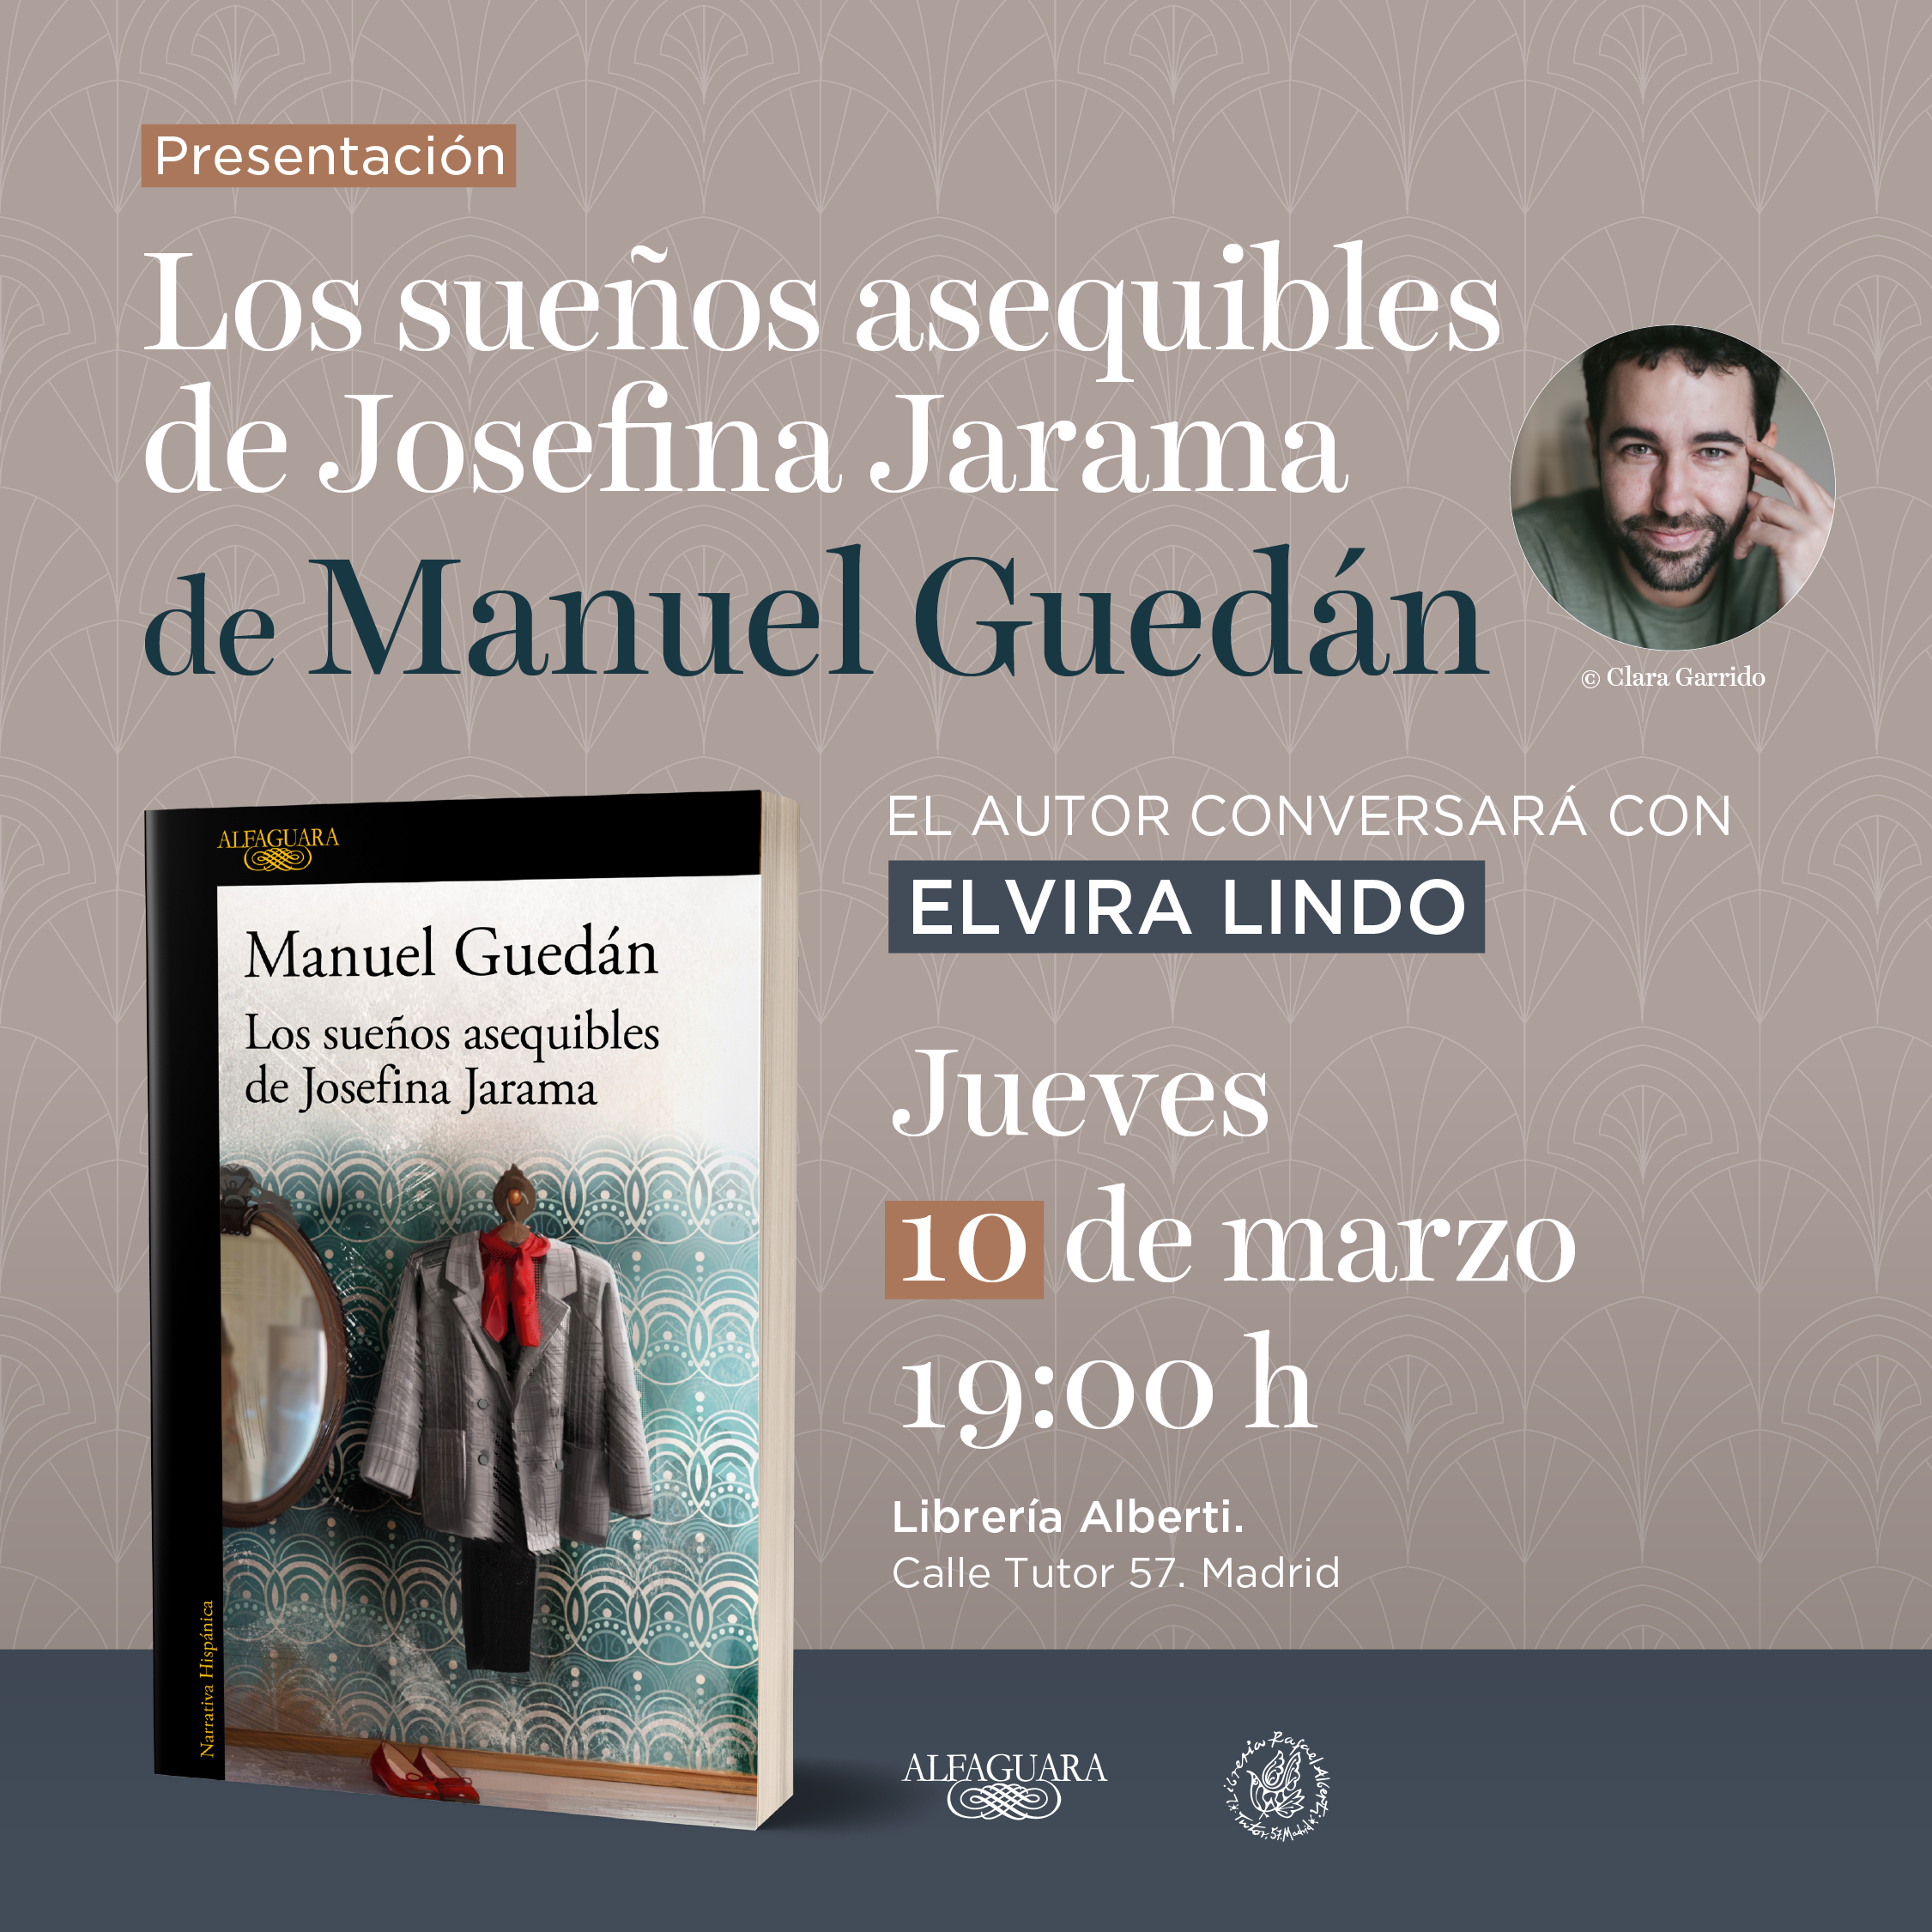 MANUEL GUEDÁN, Los sueños asequibles de Josefina Jarama (Alfaguara)